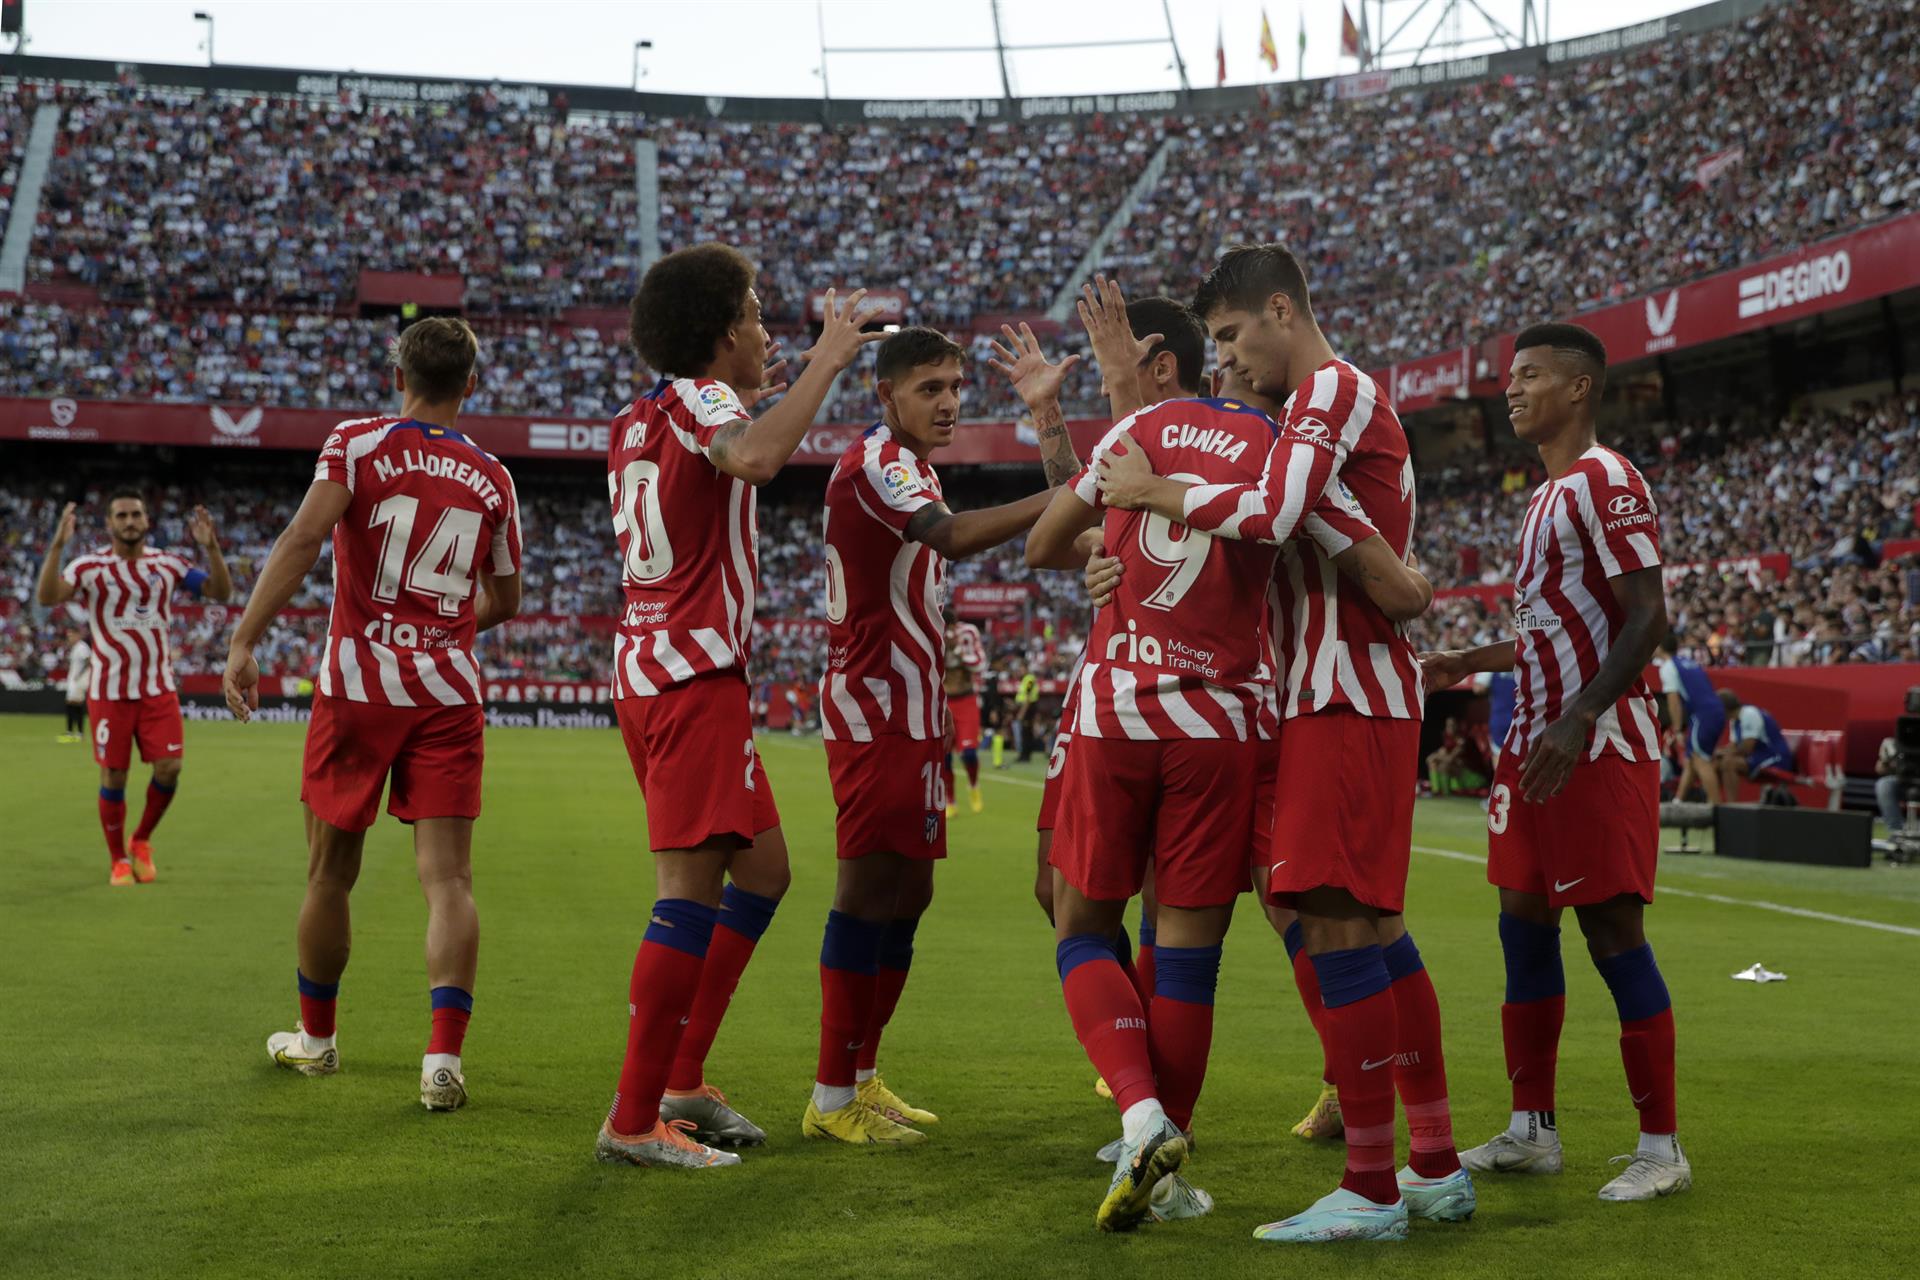 El delantero del Atlético de Madrid Álvaro Morata (2d) celebra su gol, segundo del equipo ante el Sevilla FC, durante el partido de la jornada 7 de LaLiga que se jugó en el estadio Sánchez-Pizjuán, en Sevilla. EFE/Julio Muñoz